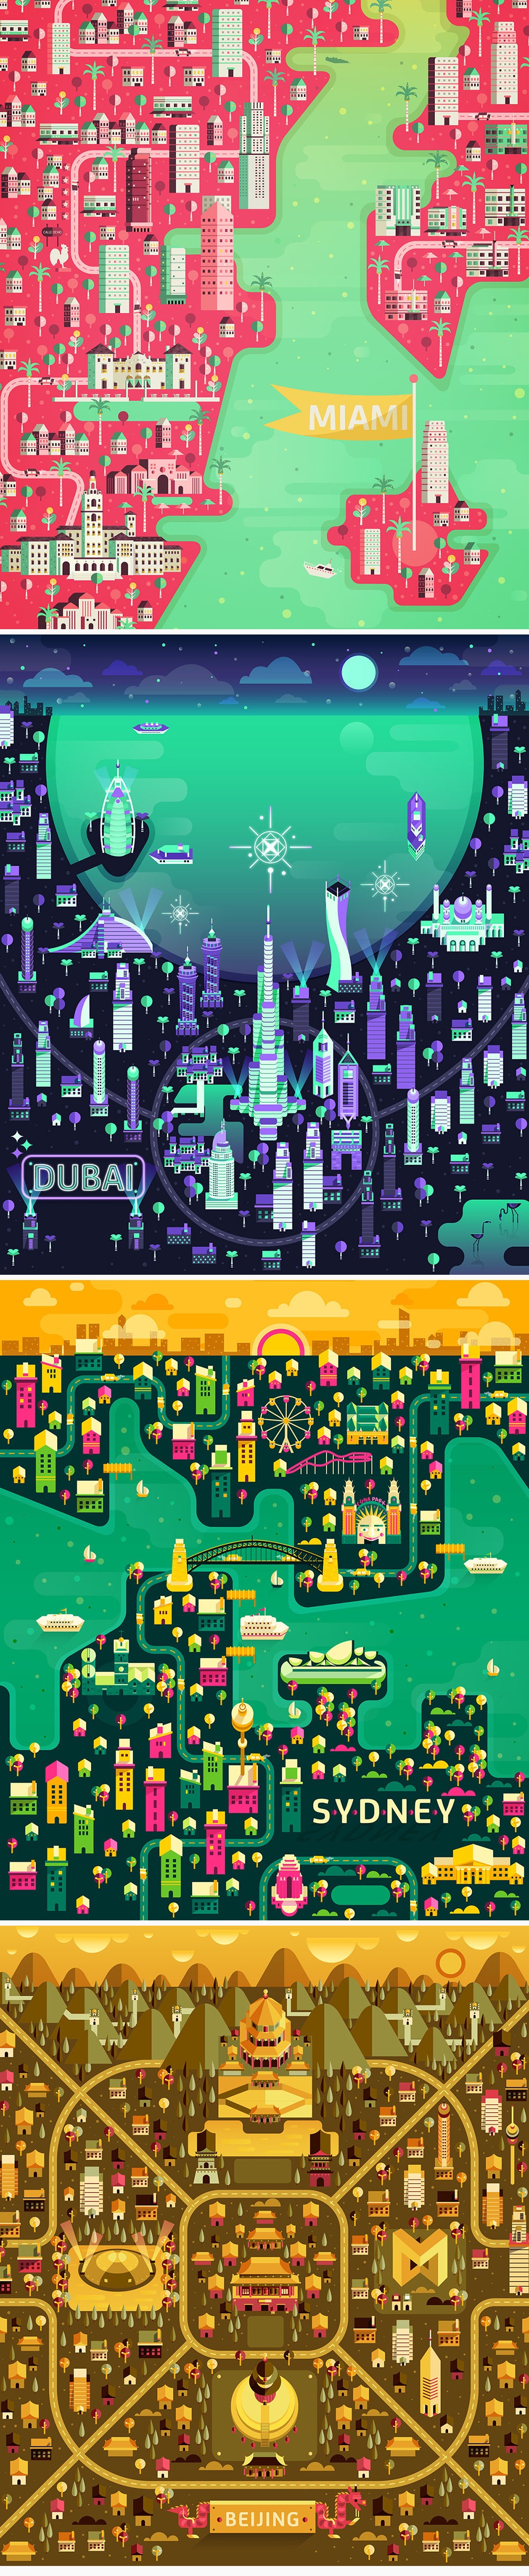 34个世界著名城市的超赞地图画法